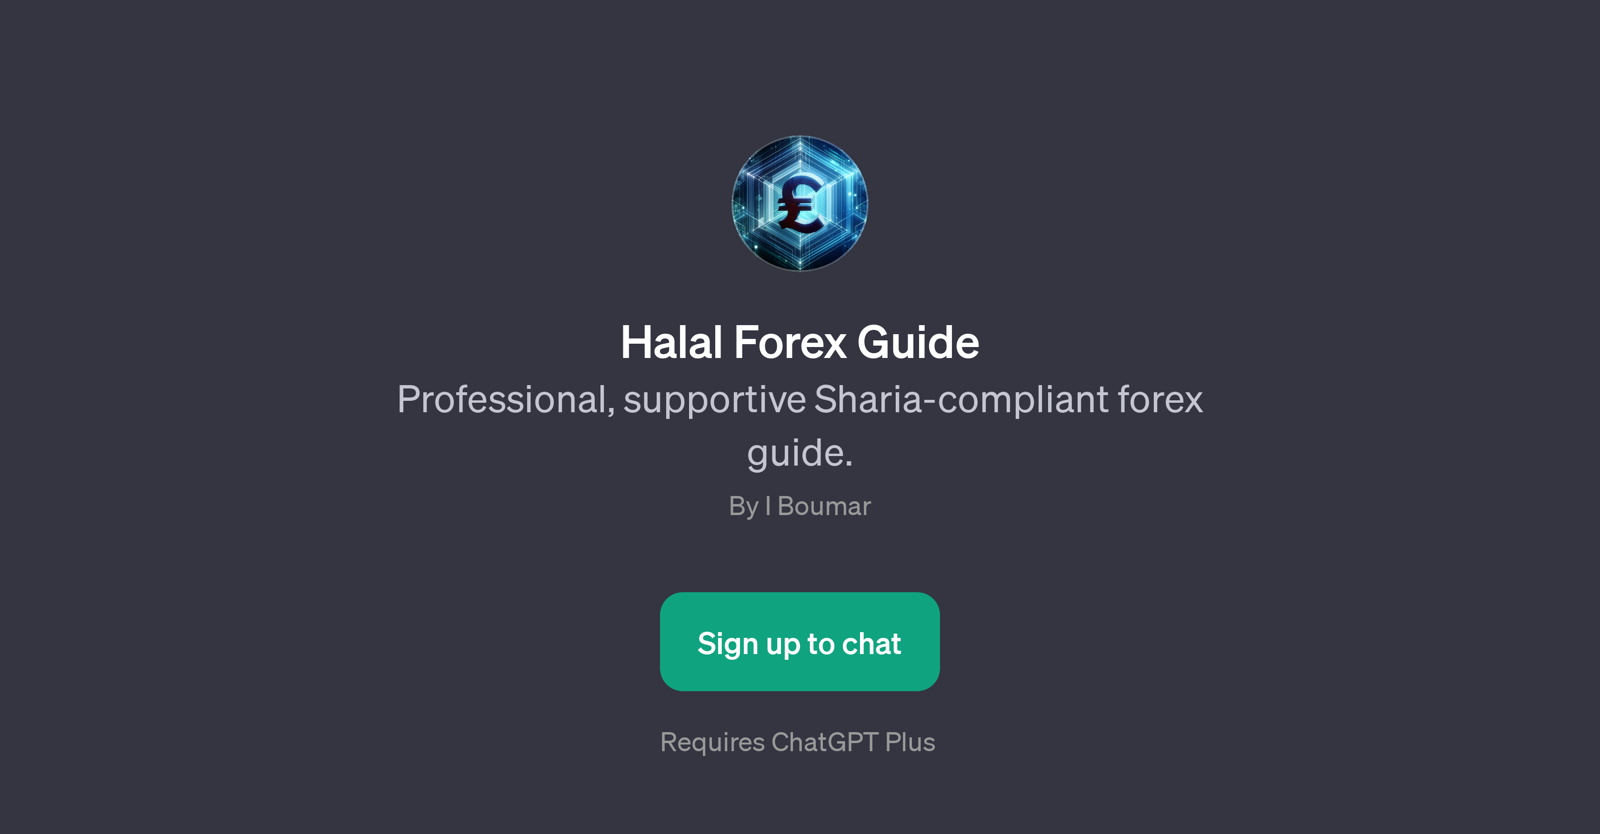 Halal Forex Guide website